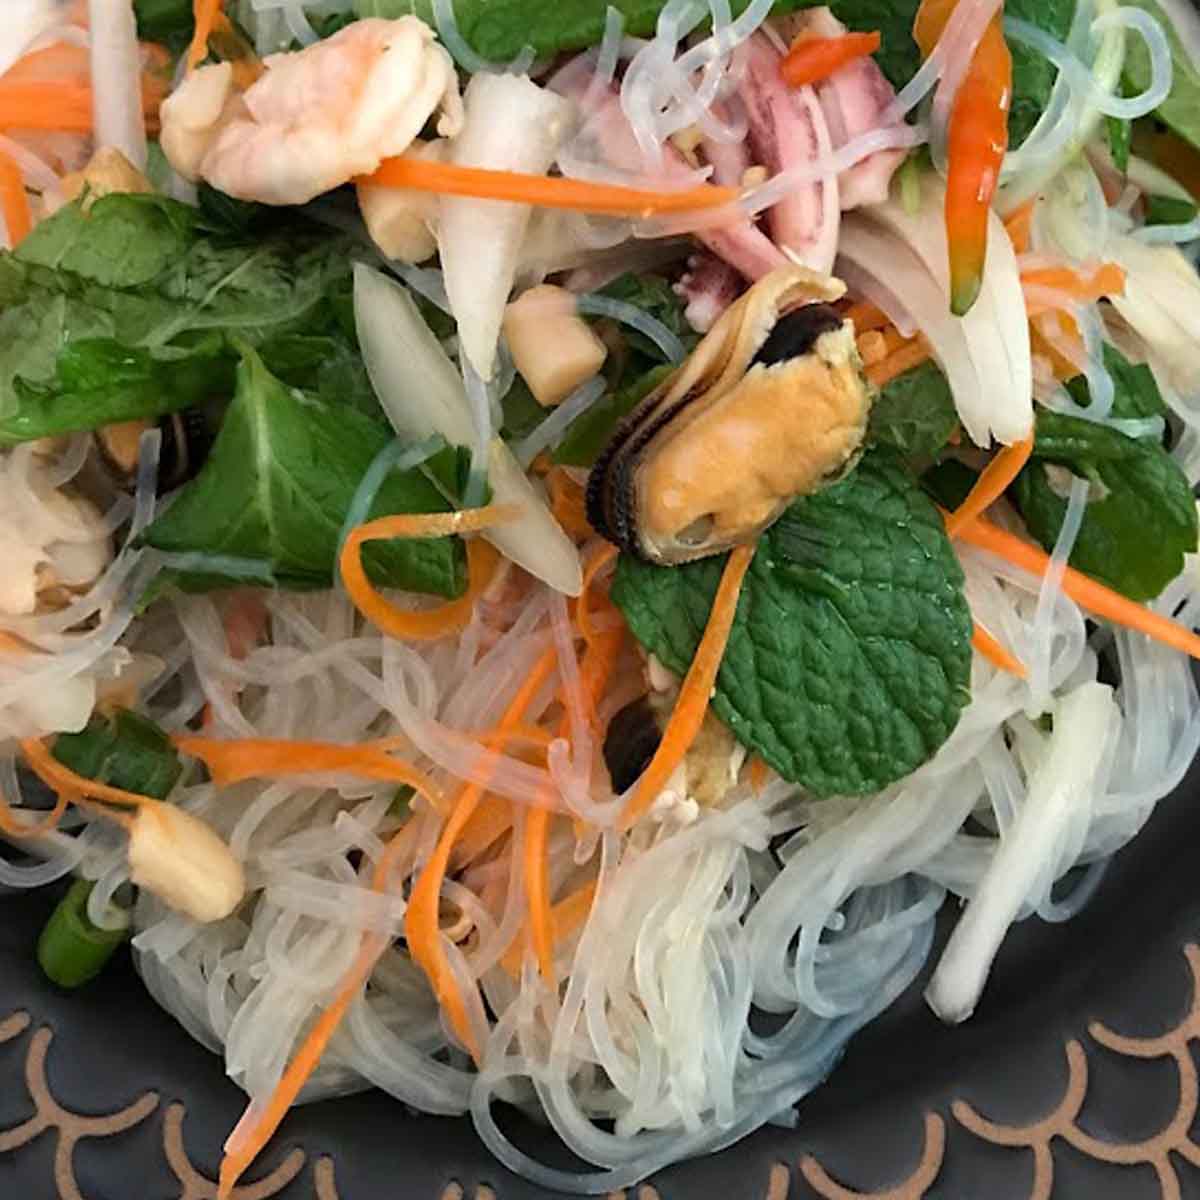 La ensalada de fideos de cristal con marisco es una ensalada tailandesa fácil y saludable que puedes modificar para satisfacer tus gustos y necesidades específicas.